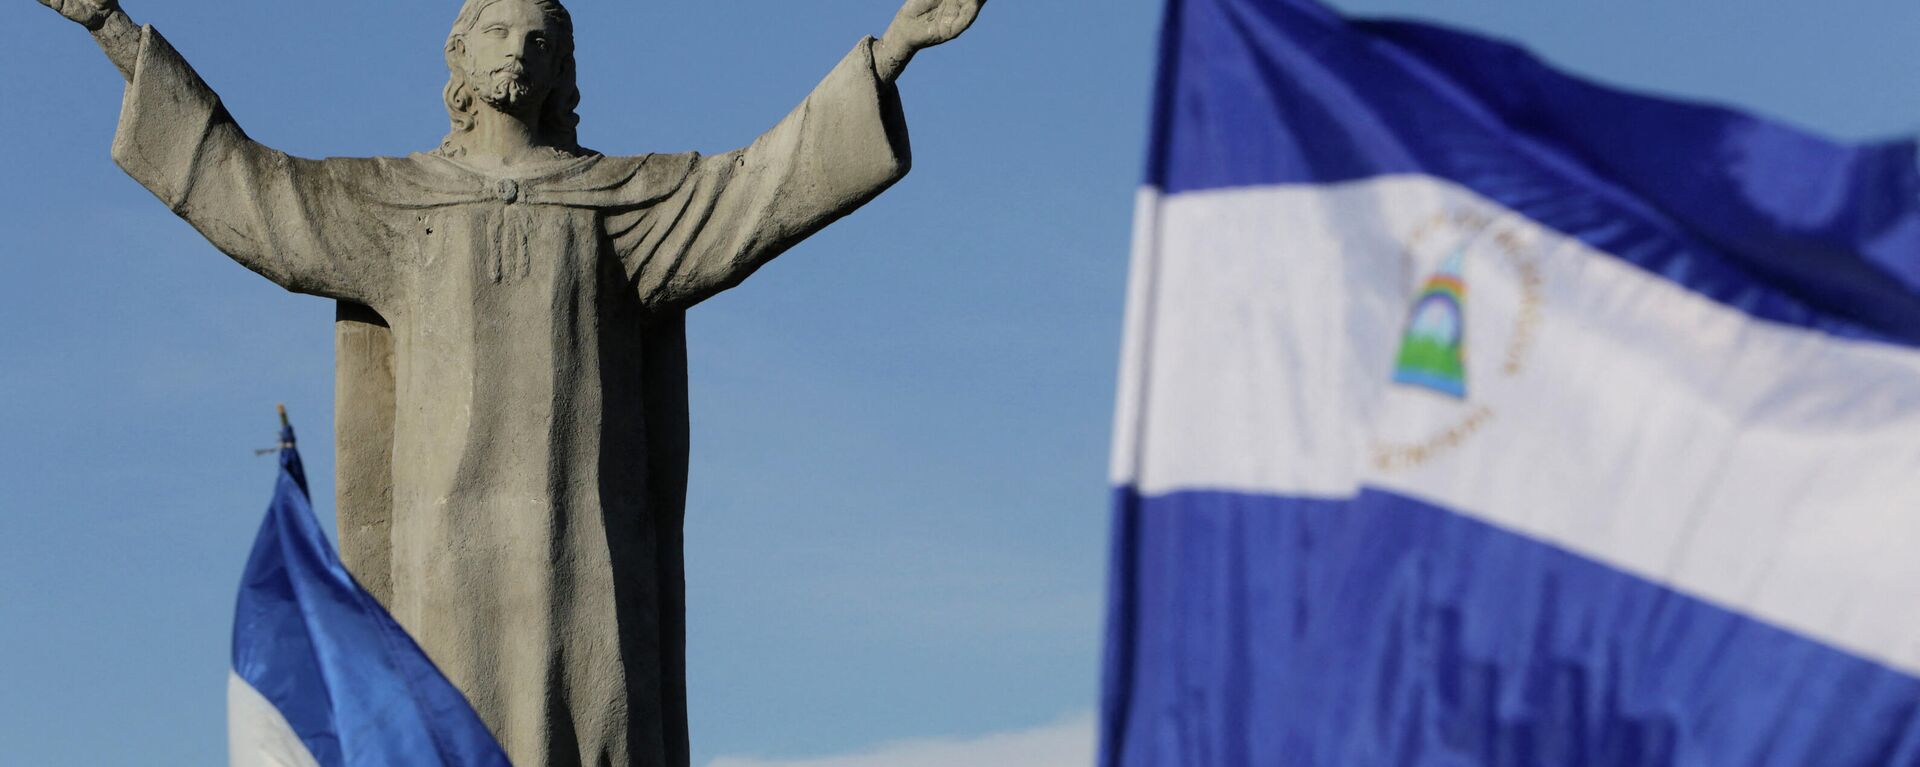 Национальные флаги Никарагуа развеваются возле монумента Христос-Царь в Манагуа во время антиправительственного марша под названием Здесь нет ничего нормального - Sputnik Аҧсны, 1920, 22.11.2021